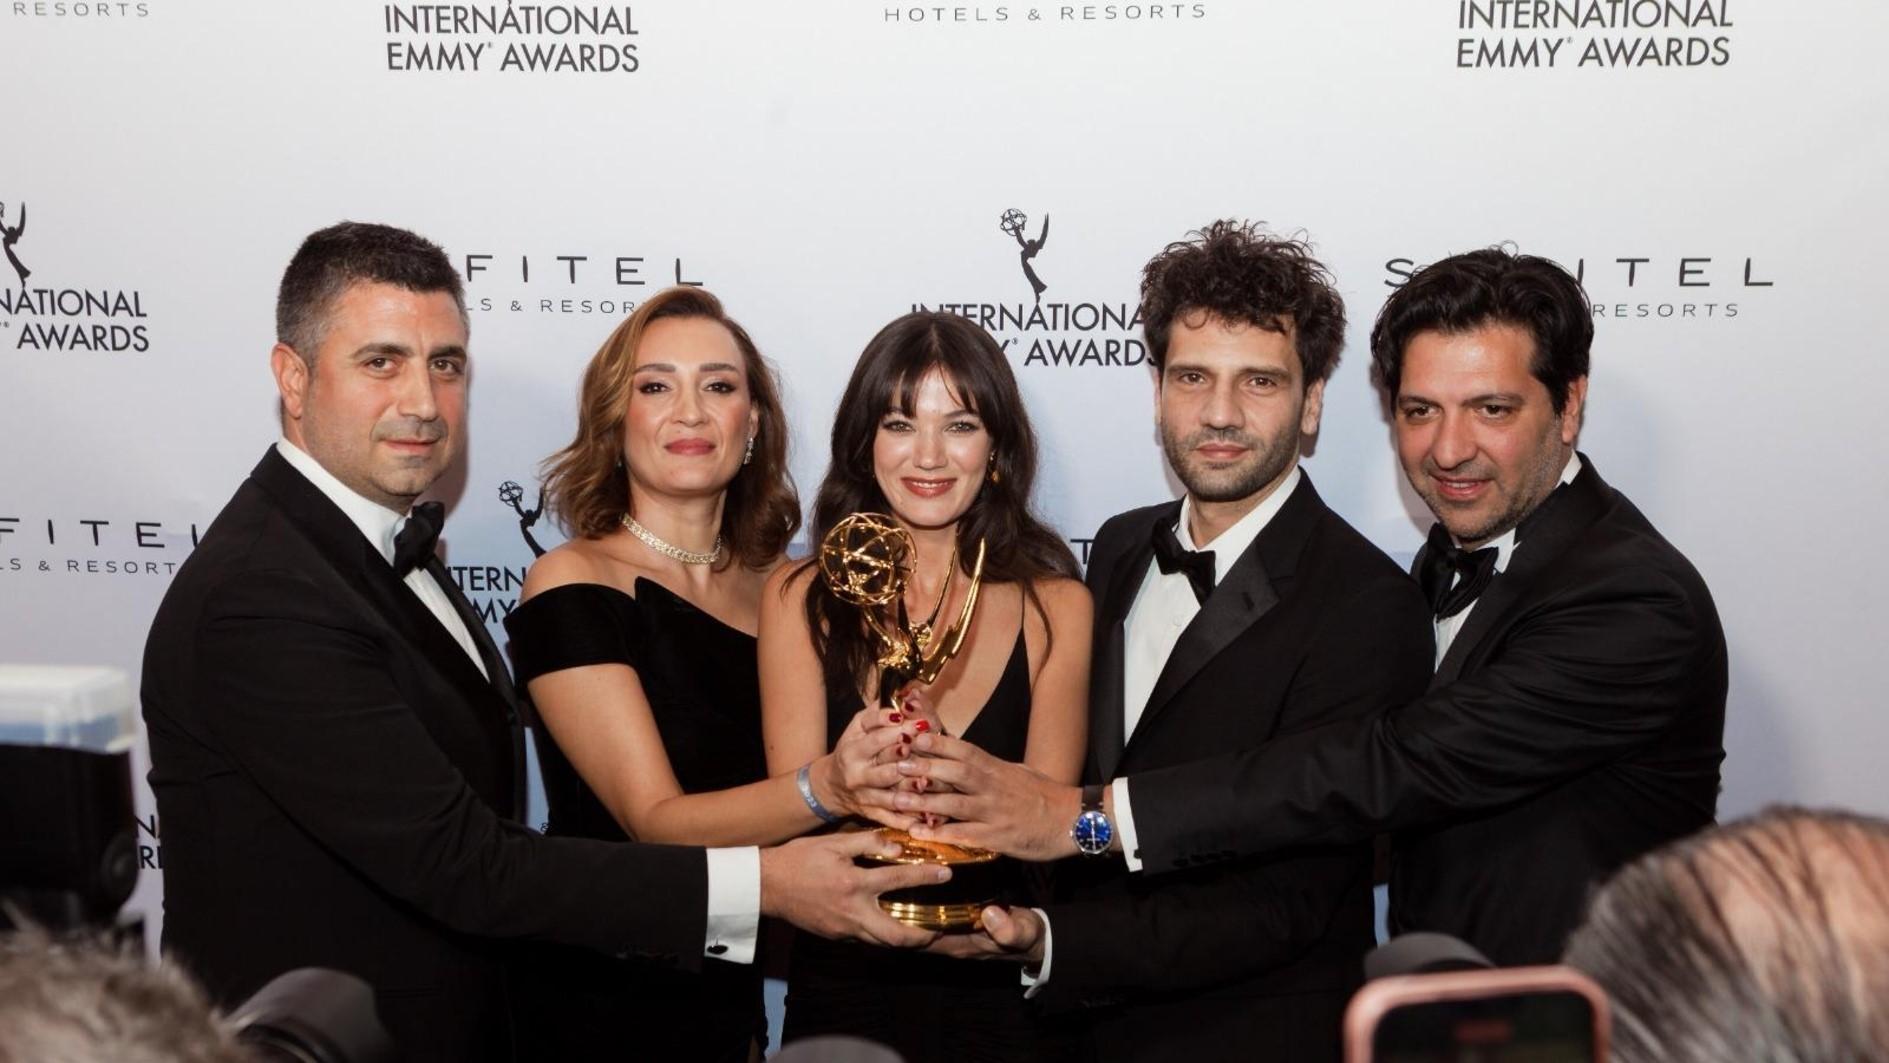 KUNSTEN &  LIFE Turkse serie wint Emmy Award De Turkse tv-serie “Yargı” (Familiebanden) heeft de Best Telenovela Award gewonnen tijdens de 51e International Emmy Awards in New York.  De serie, geproduceerd door Ay Yapım, is een van de Turkse drama’s die zowel in Turkije als in het buitenland wordt geprezen.